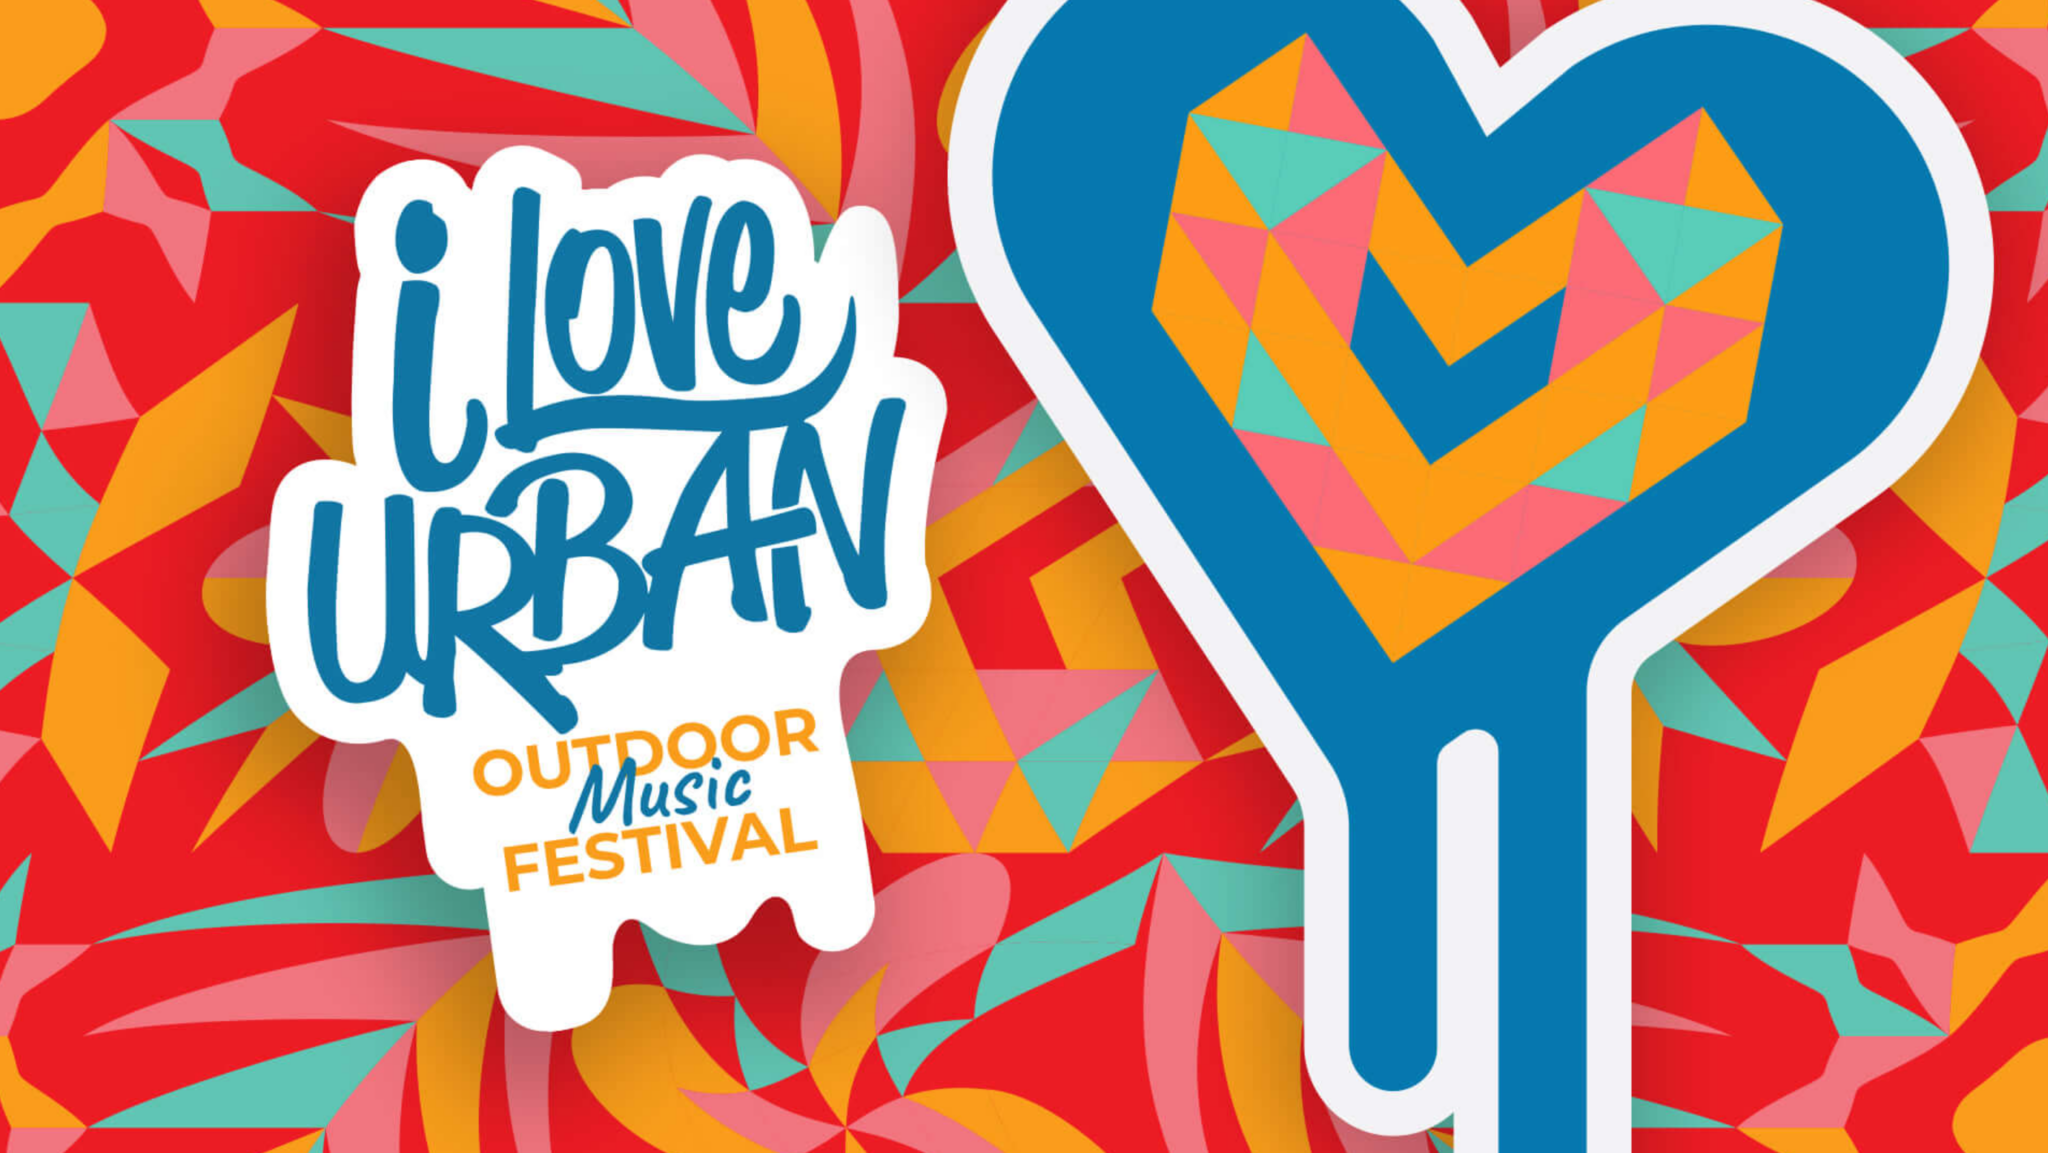 I Love Urban Outdoor Music Festival in Nesselande op 16 juli NIEUWS